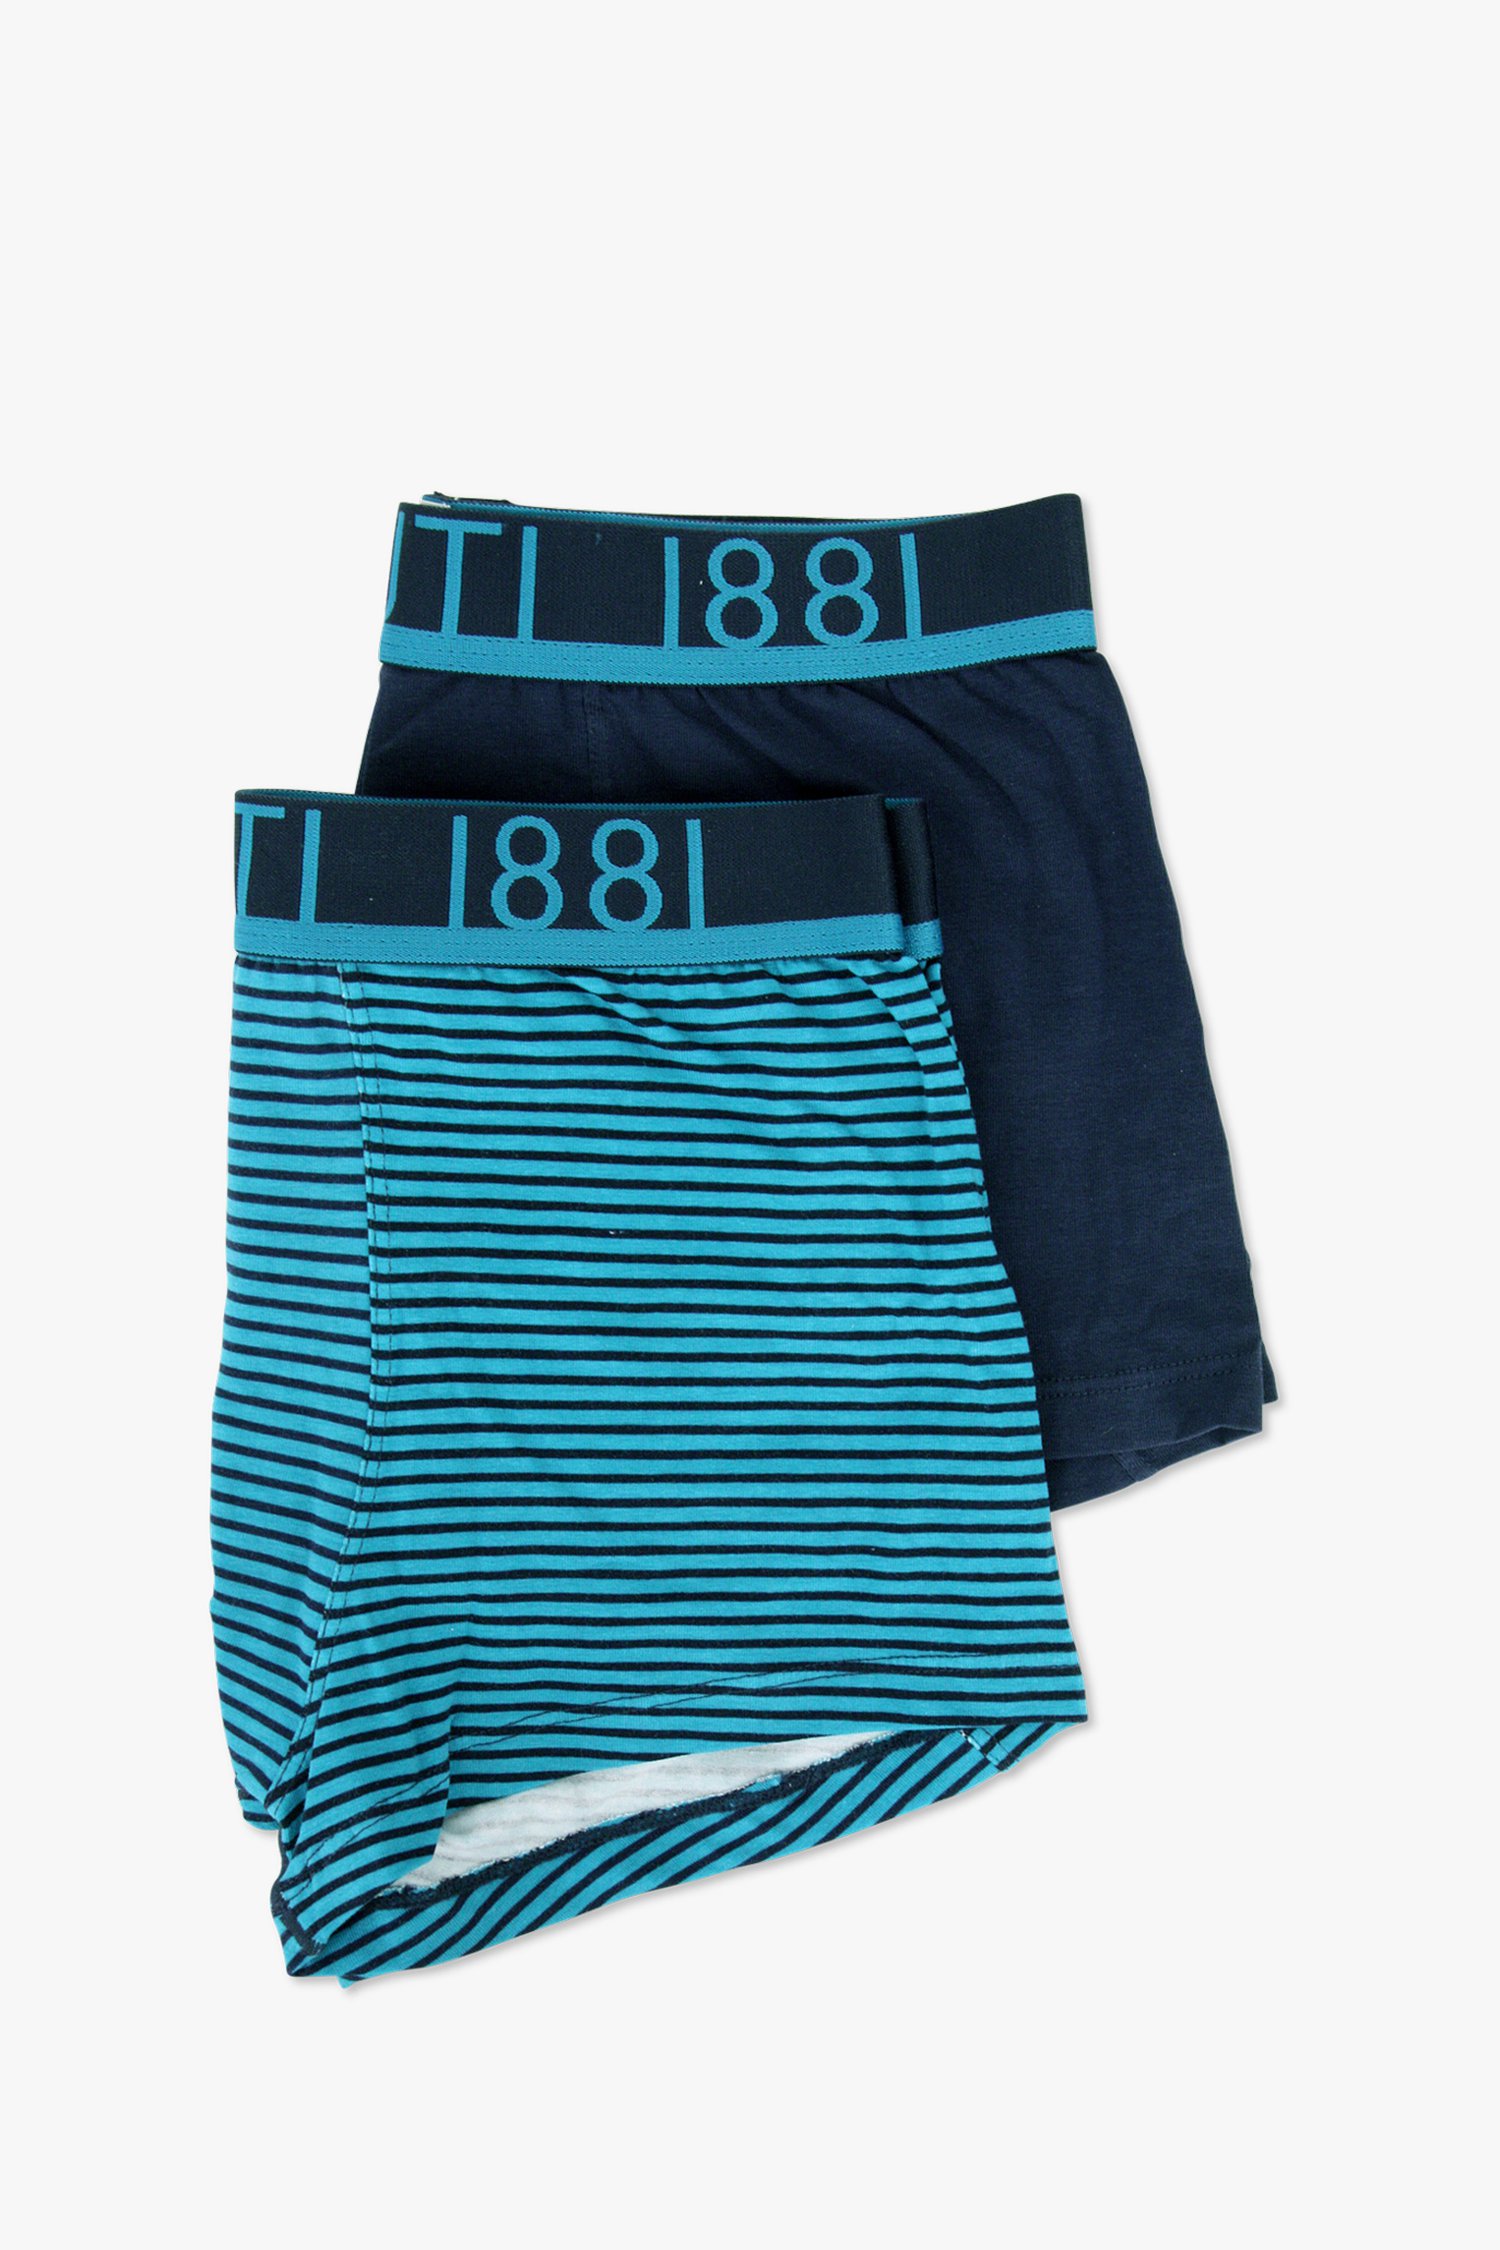 Boxers - bleu avec et sans rayures - 2 pack de Cerruti 1881 pour Hommes